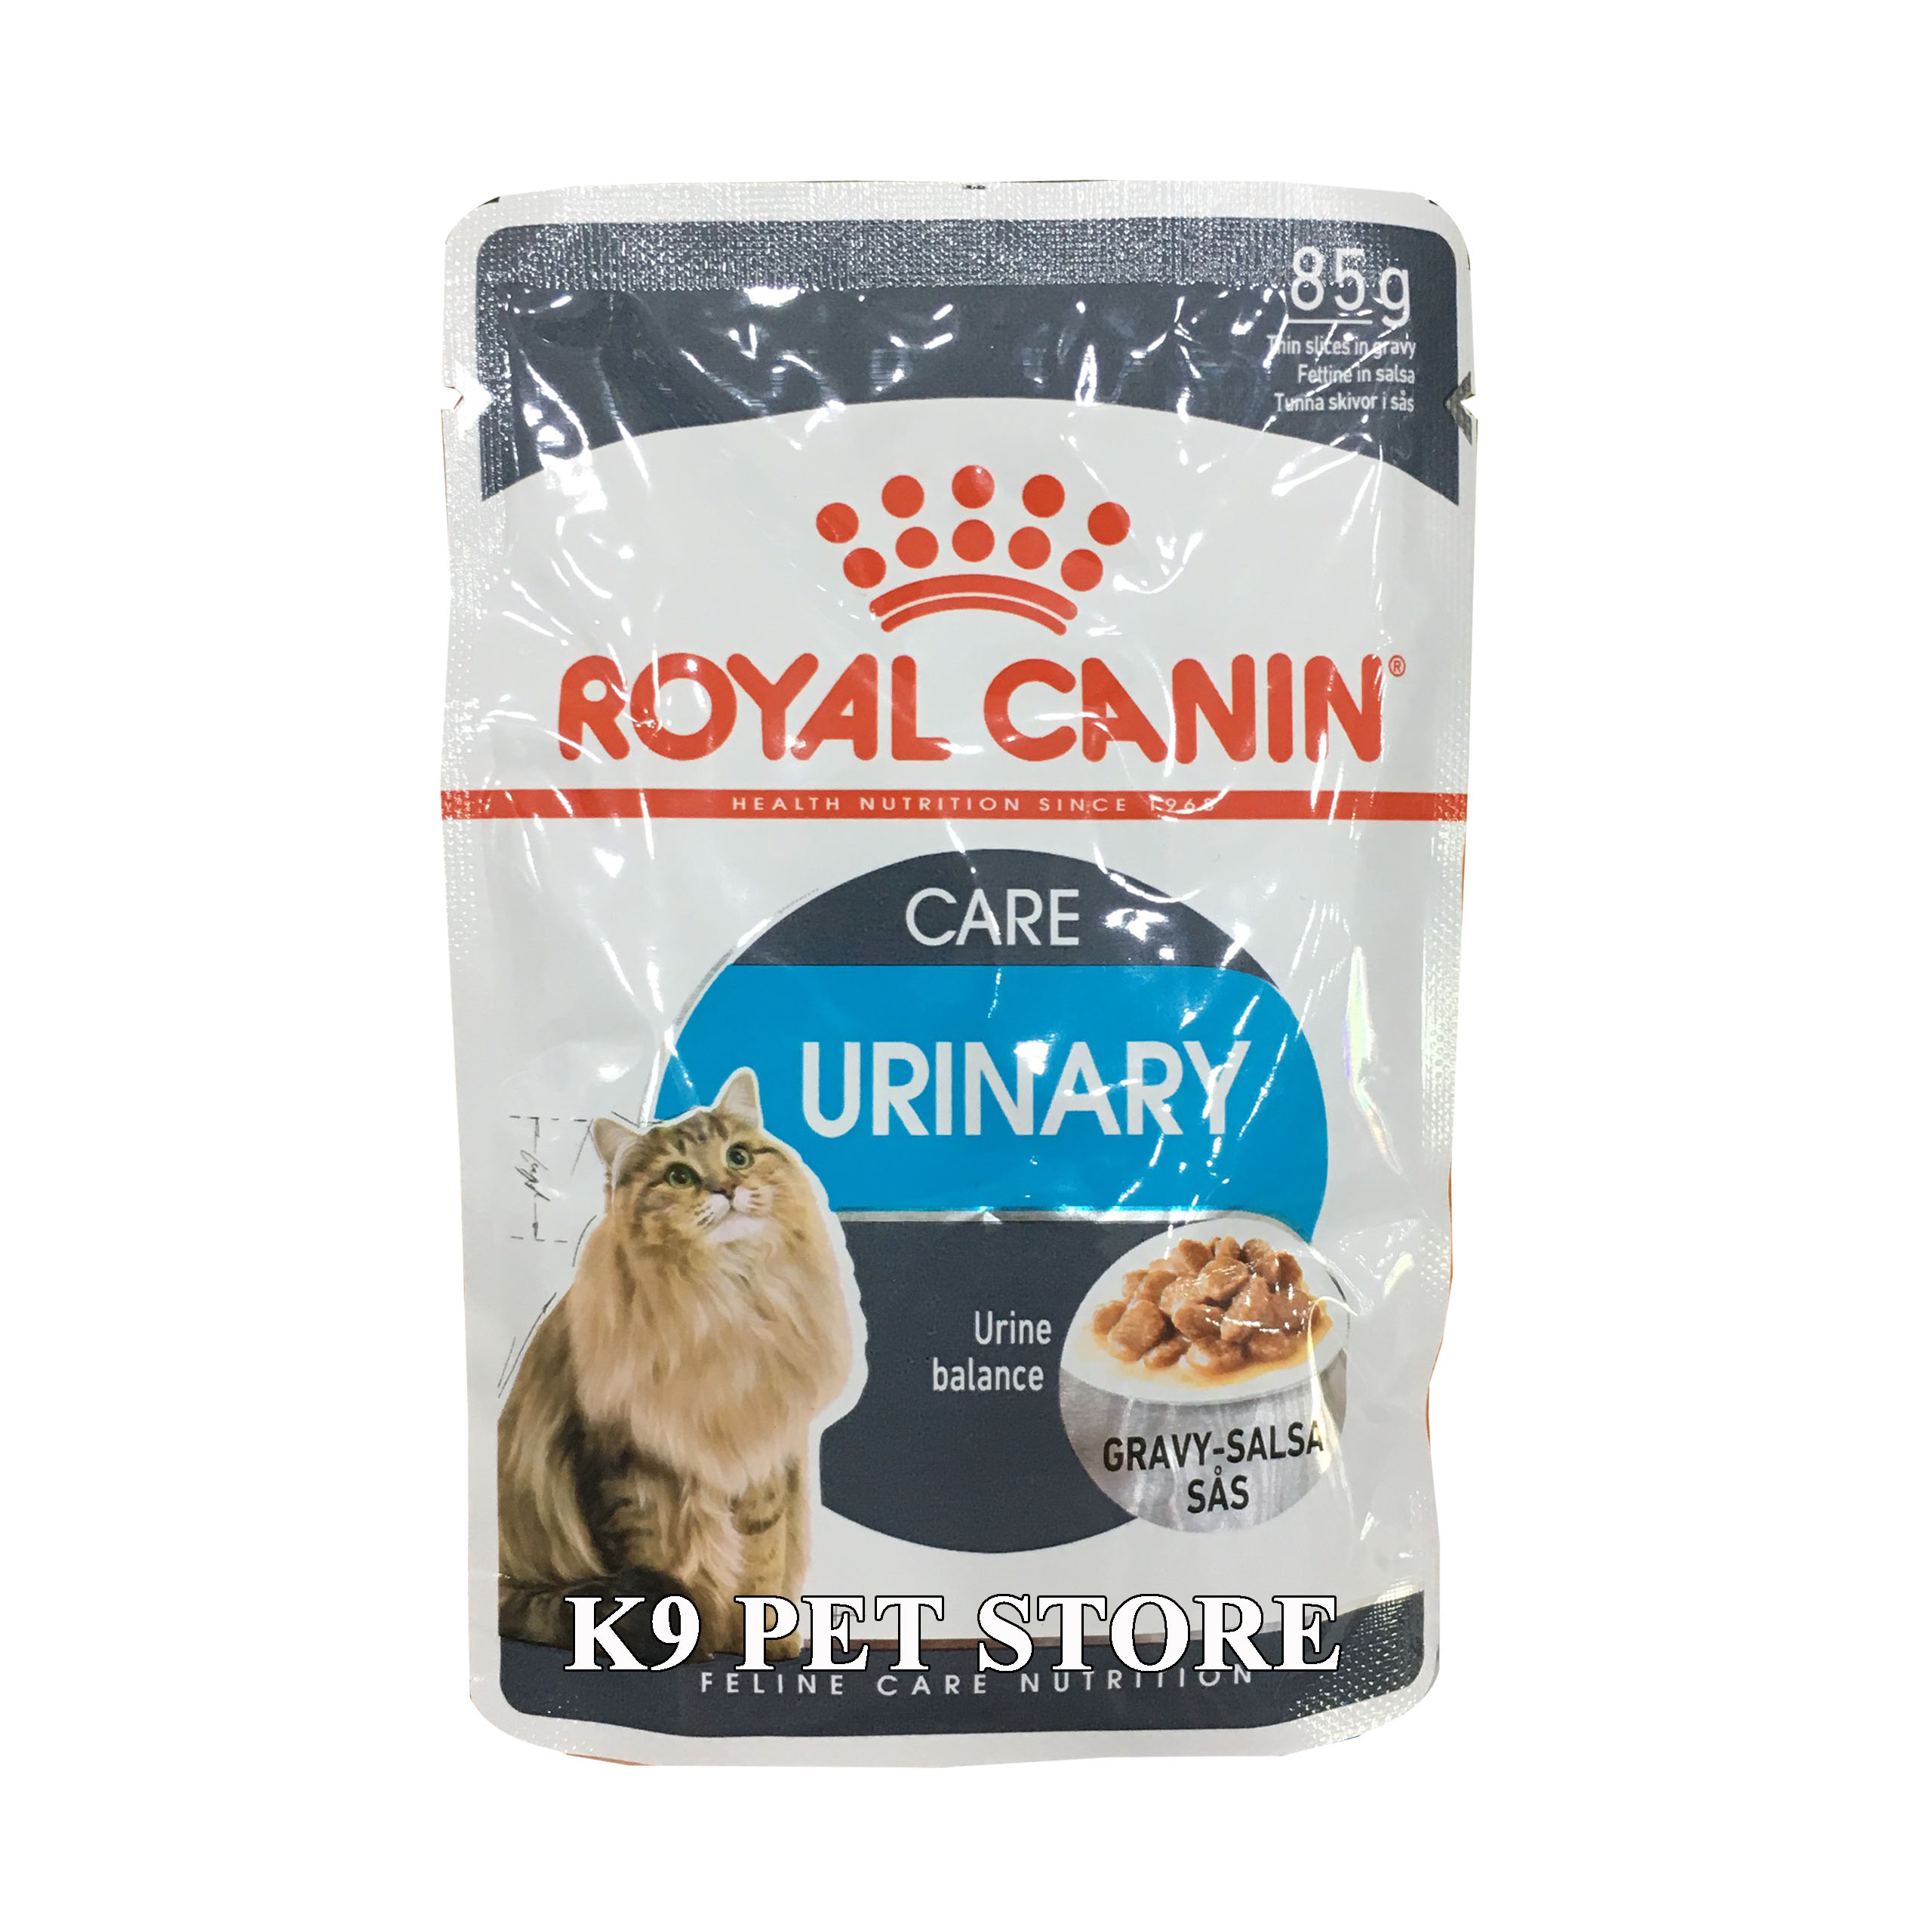 Royal Canin Care Urinary - Pate hỗ trợ cho mèo tiết niệu 85g